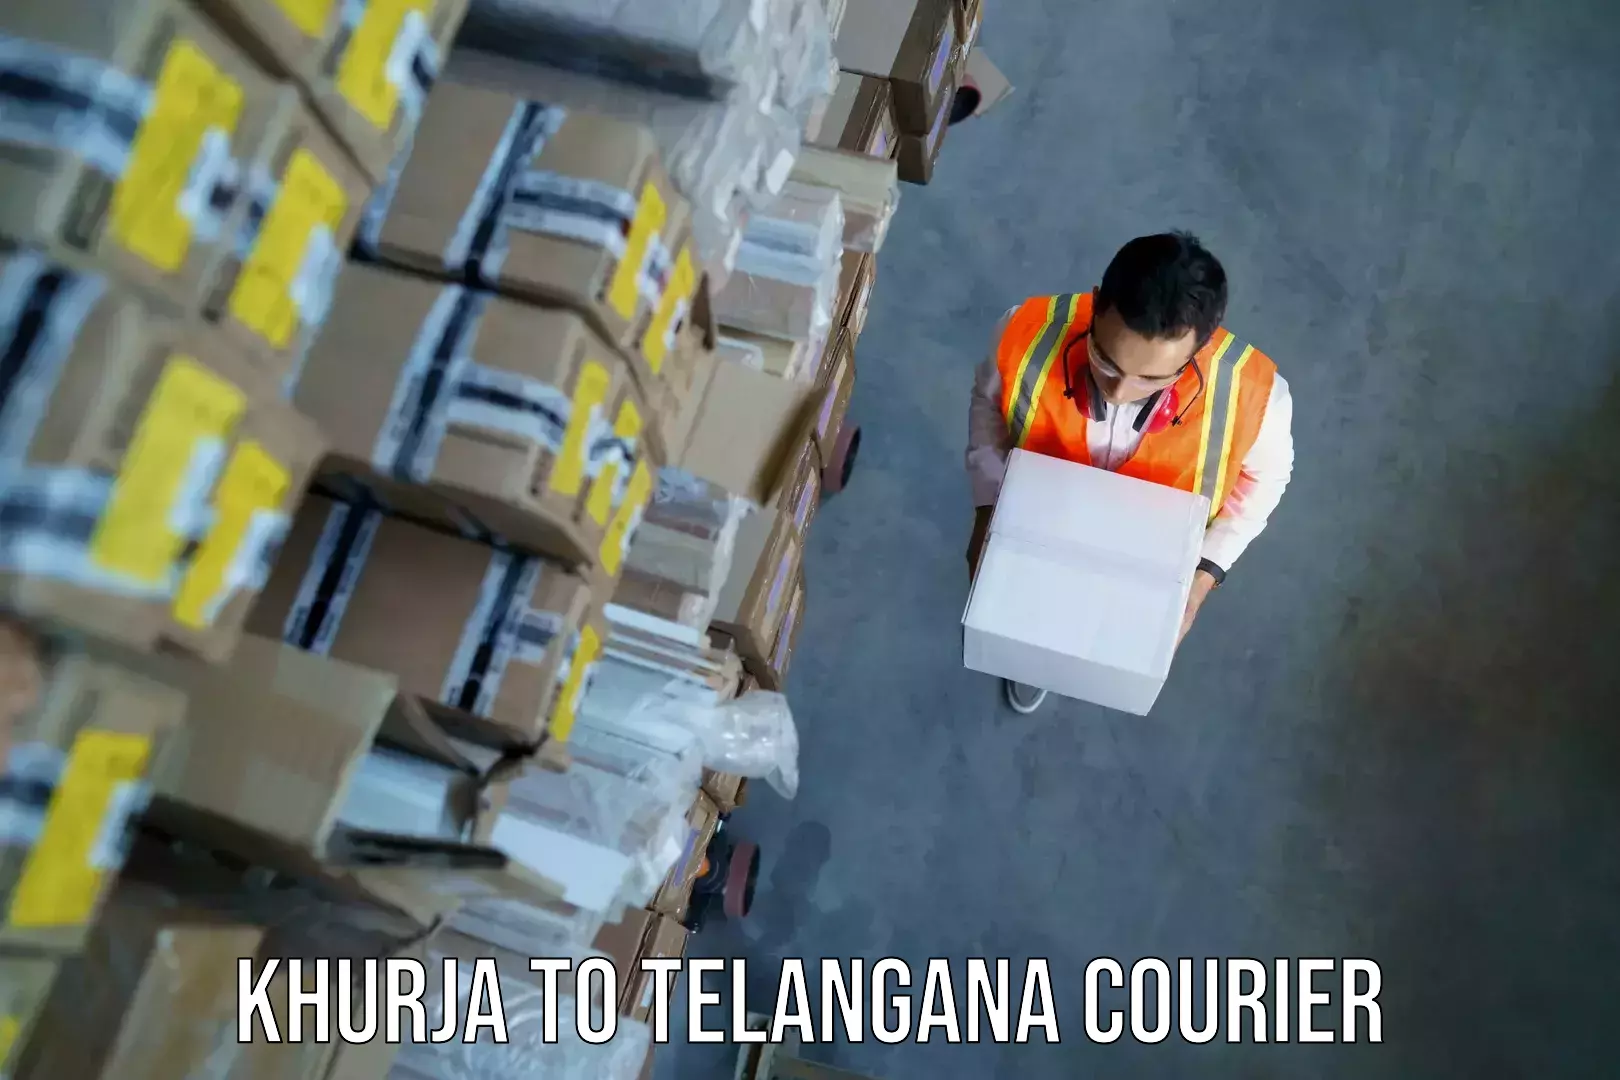 Baggage shipping logistics in Khurja to Mudigonda